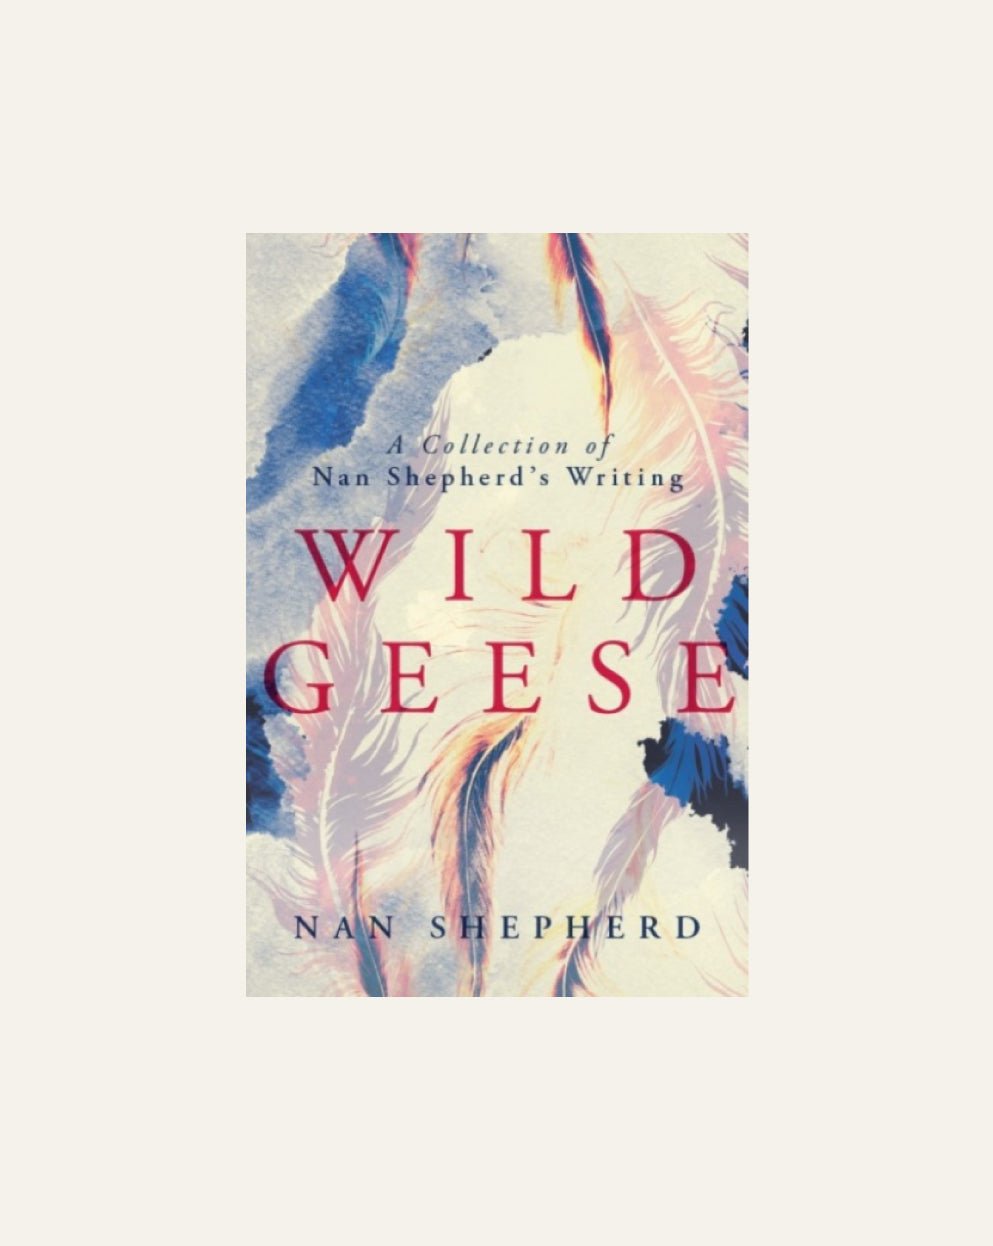 Wild Geese: A Collection of Nan Shepherd's Writing - Hidden Scotland